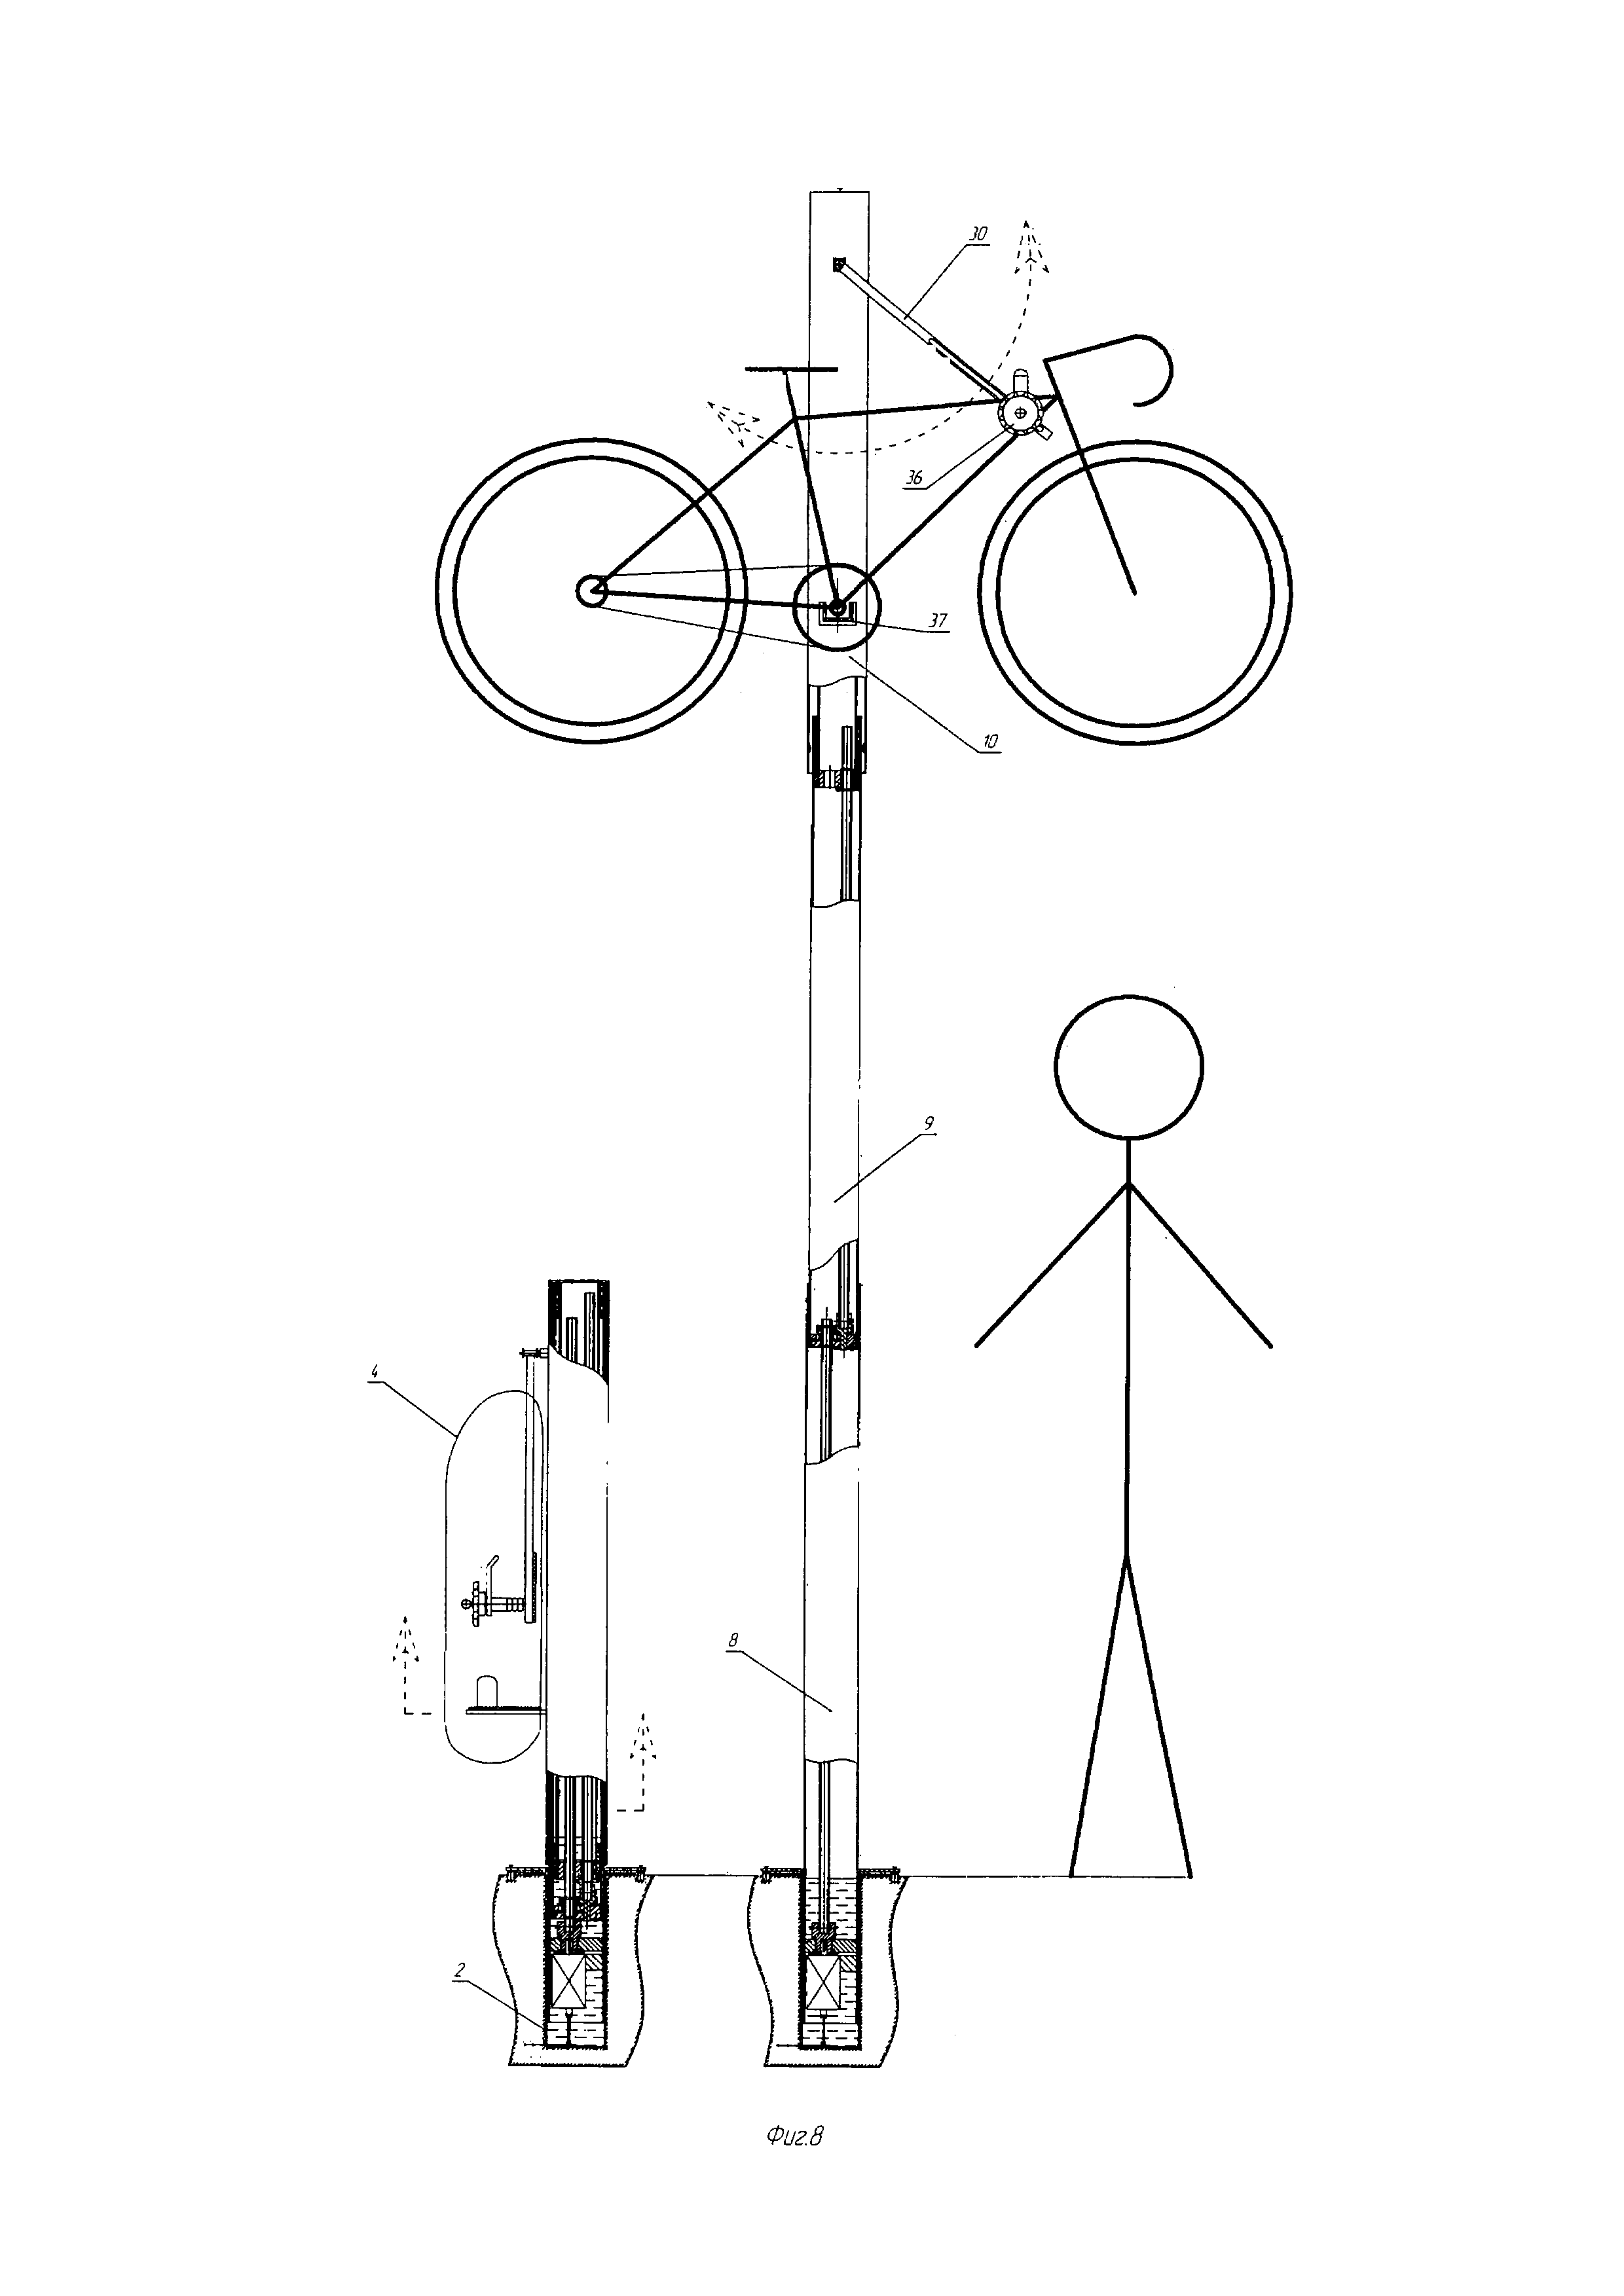 Велосипедная парковка (варианты) и устройство её консервации (варианты)